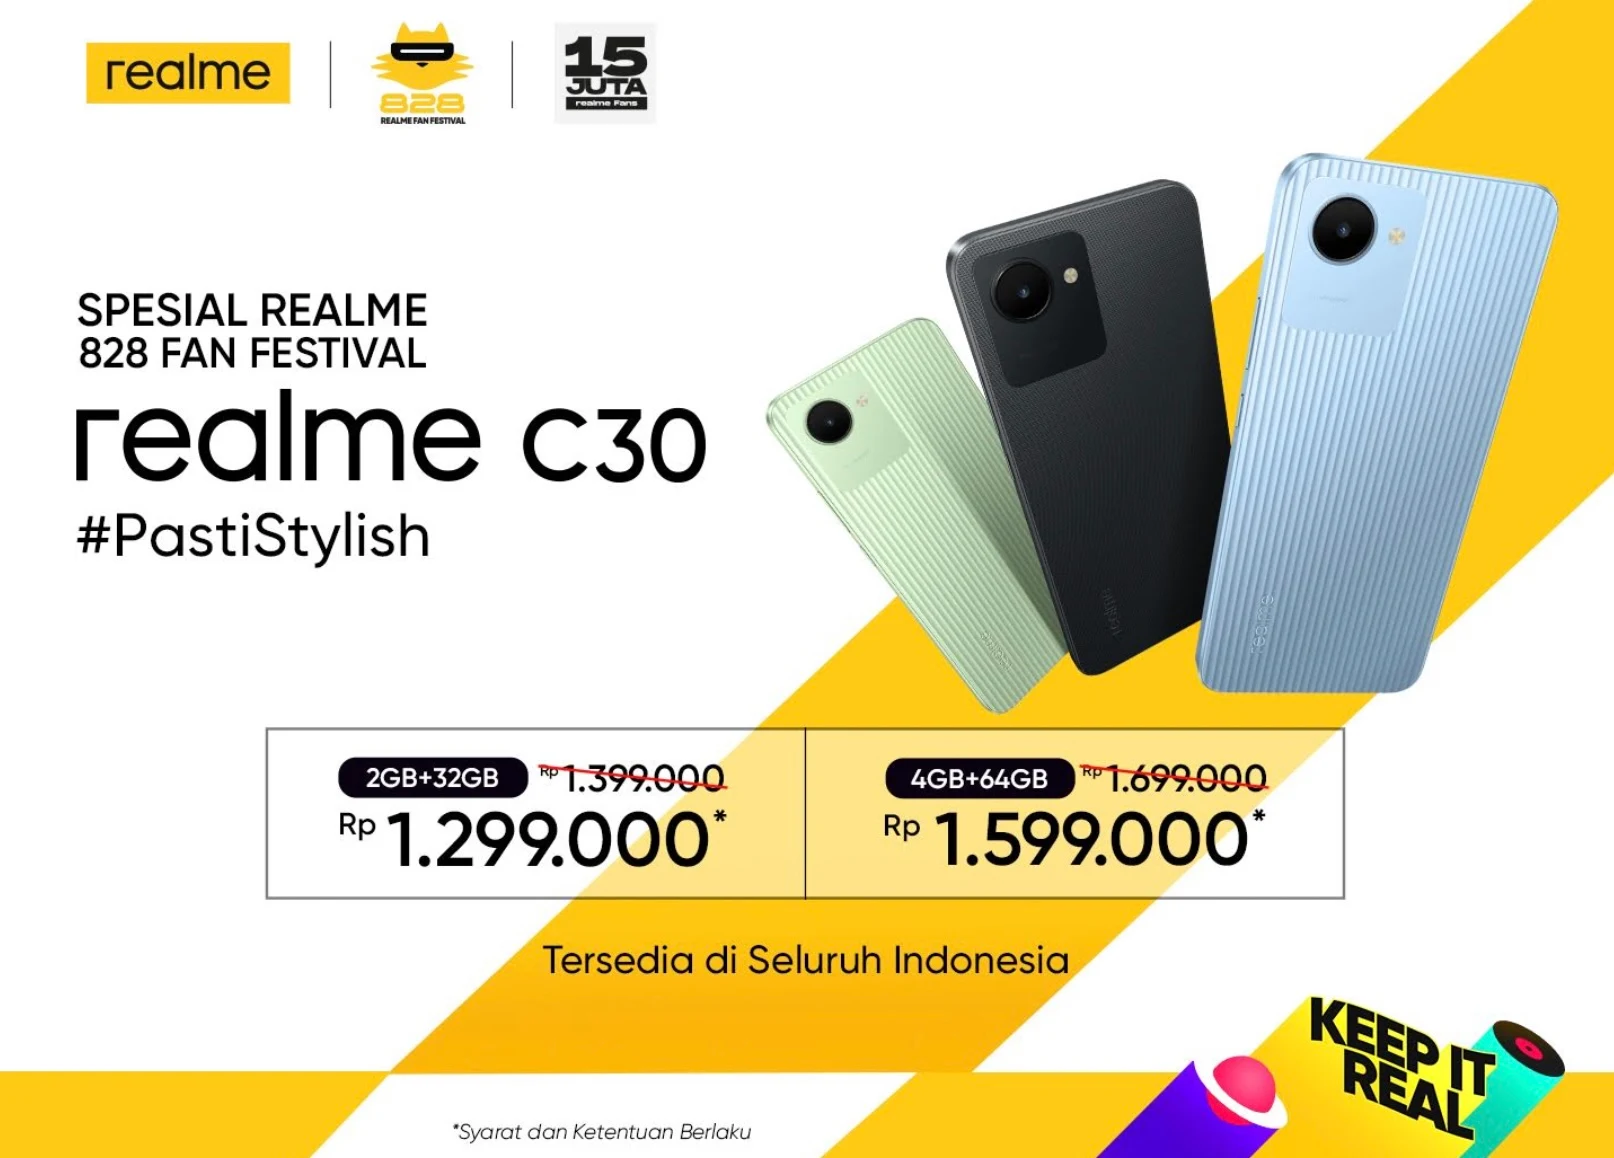 Harga Realme C35 dan Realme C30 Dipangkas, Siap Meriahkan realme 828 Fan Festival